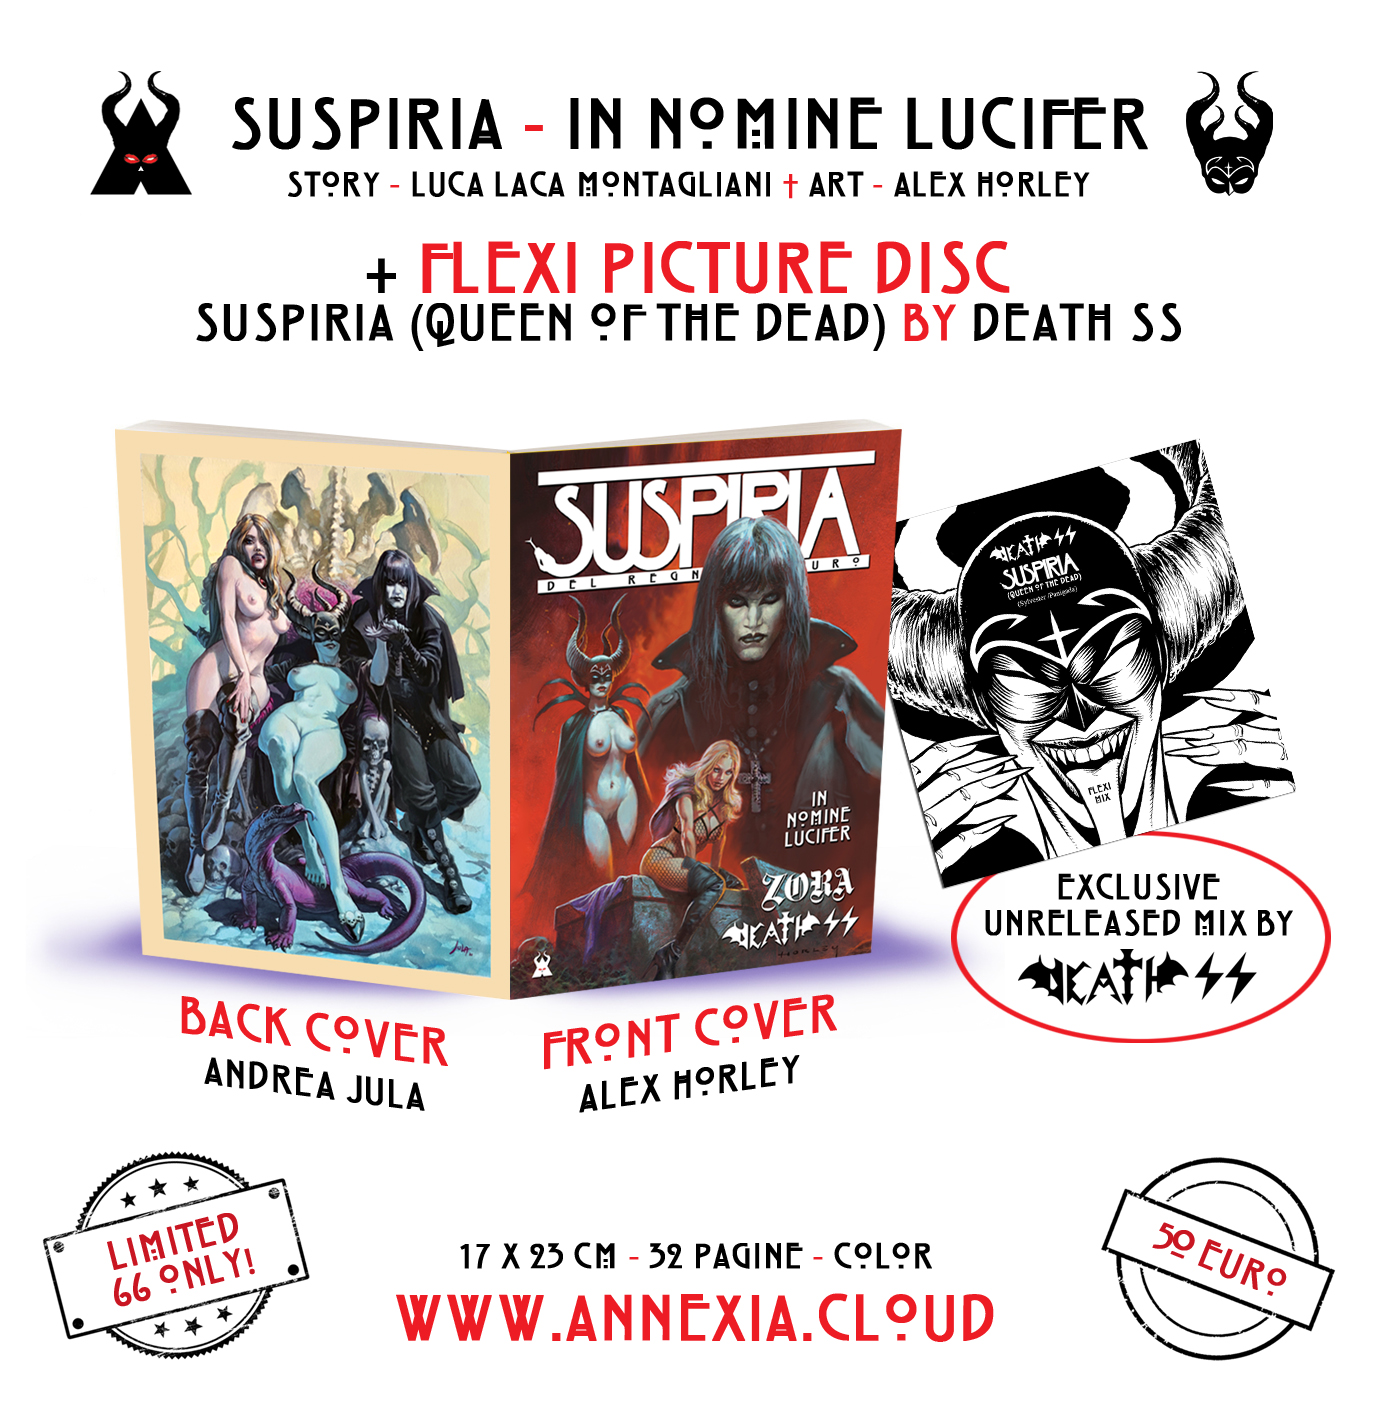 SUSPIRIA - IN NOMINE LUCIFER + FLEXI DISC